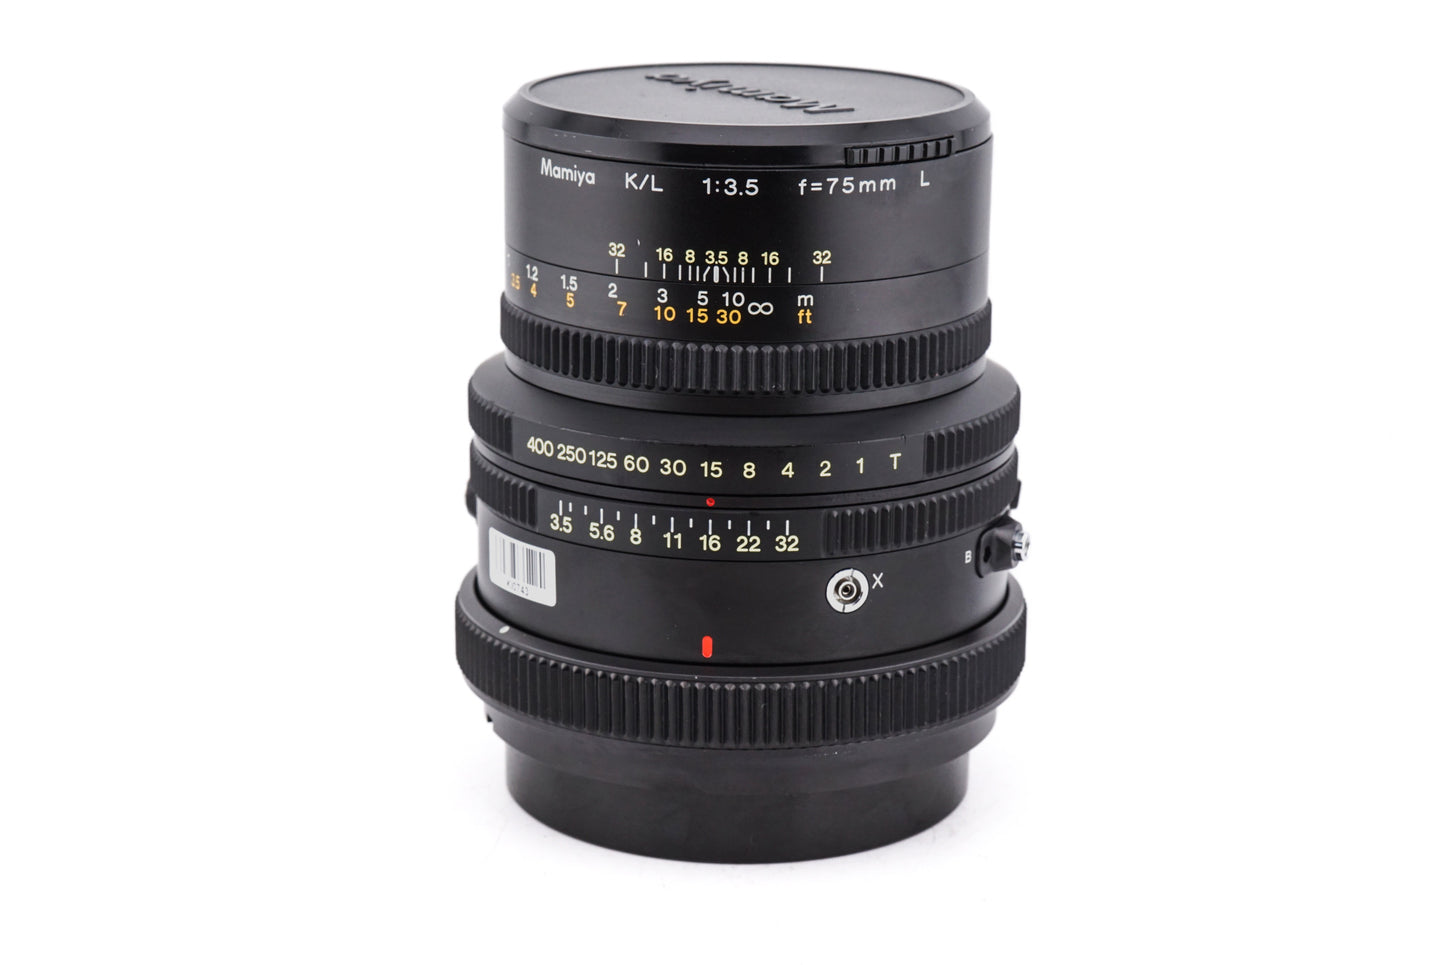 Mamiya 75mm f3.5 K/L L - Lens